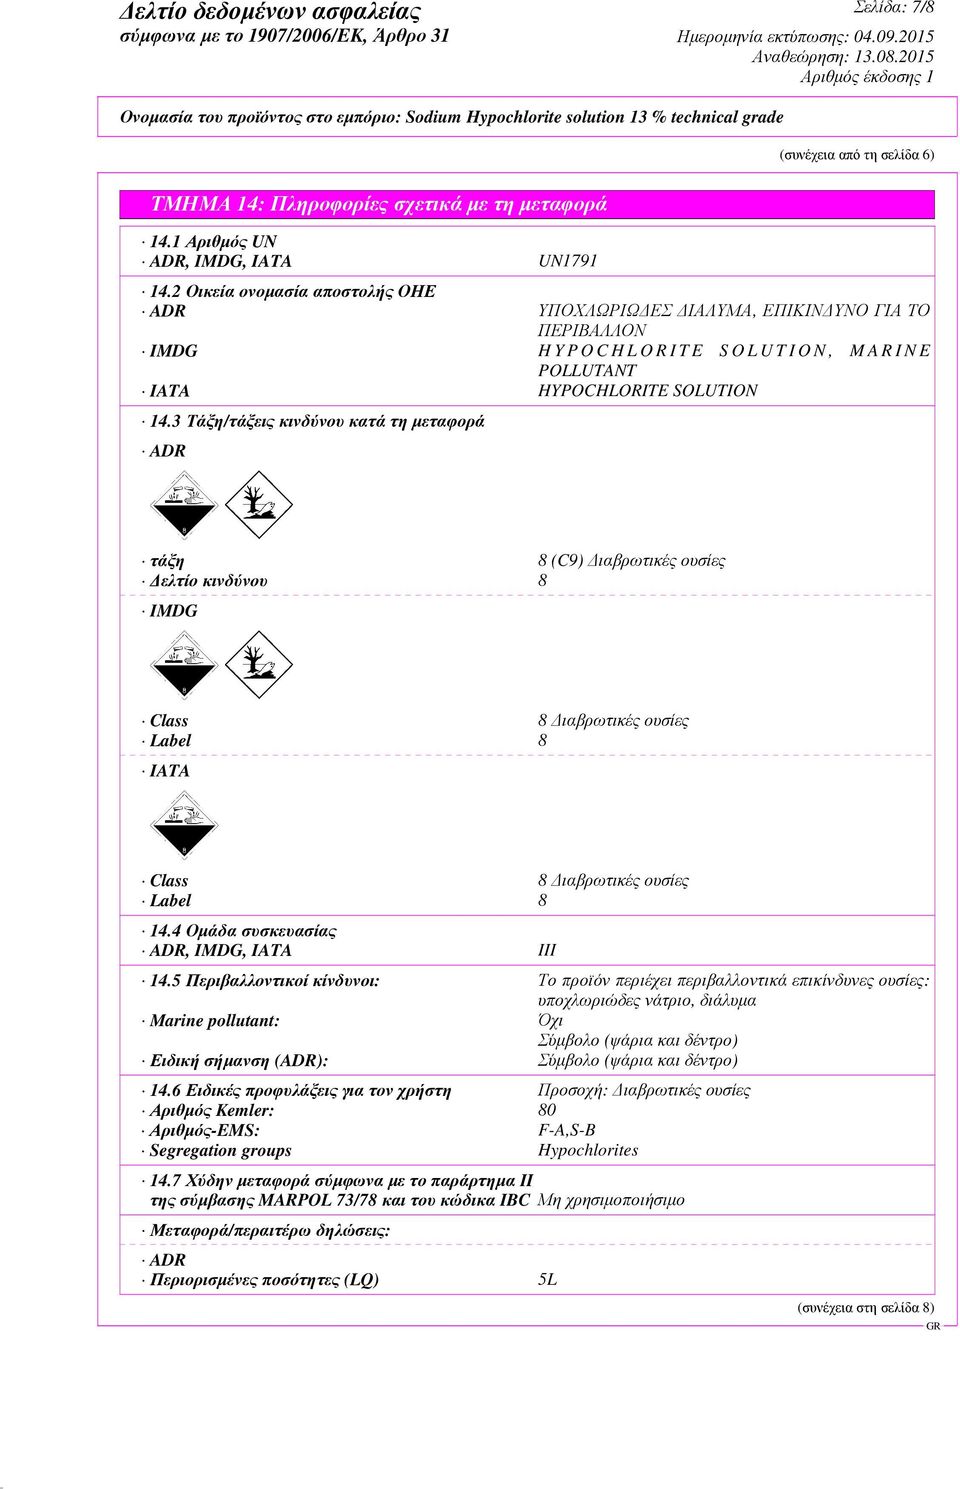 3 Τάξη/τάξεις κινδύνου κατά τη µεταφορά ADR τάξη 8 (C9) ιαβρωτικές ουσίες ελτίο κινδύνου 8 IMDG Class 8 ιαβρωτικές ουσίες Label 8 IATA Class 8 ιαβρωτικές ουσίες Label 8 14.